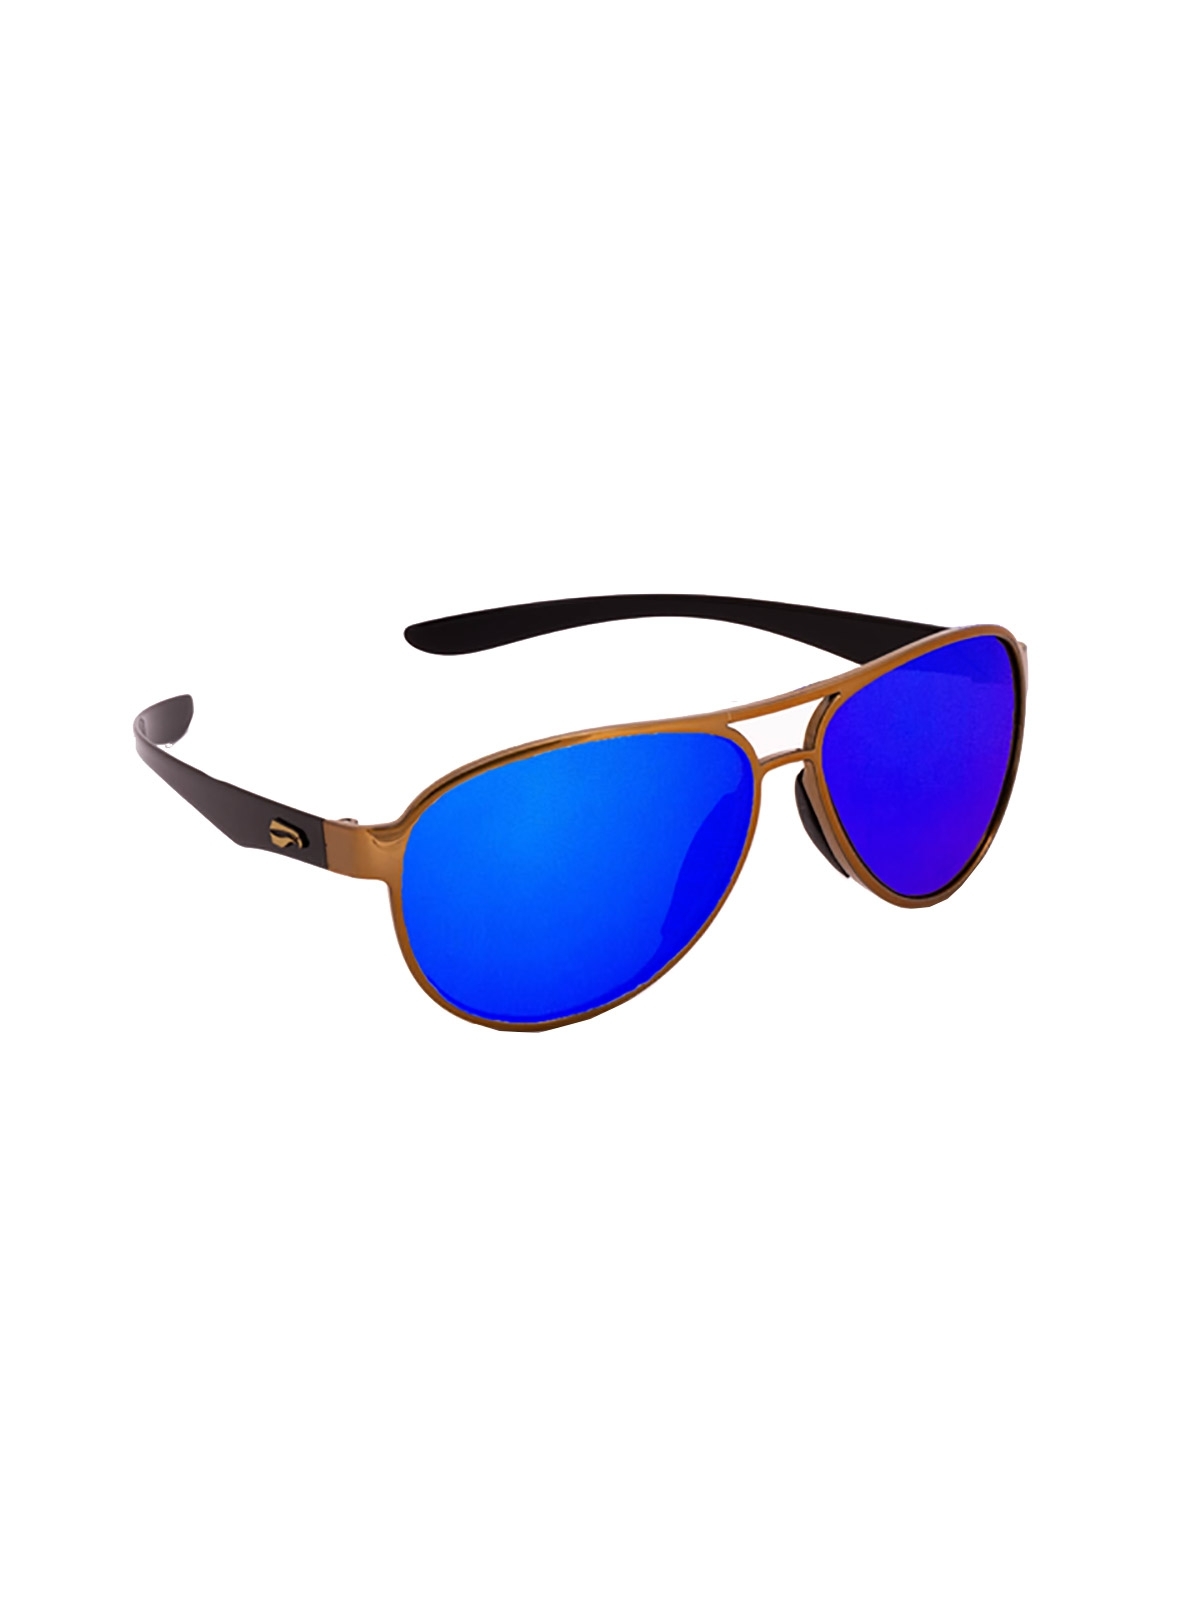 Flying Eyes Sonnenbrille Kestrel Aviator - Rahmen goldfarben mit schwarzen Bügeln, Linsen saphirblau (verspiegelt)